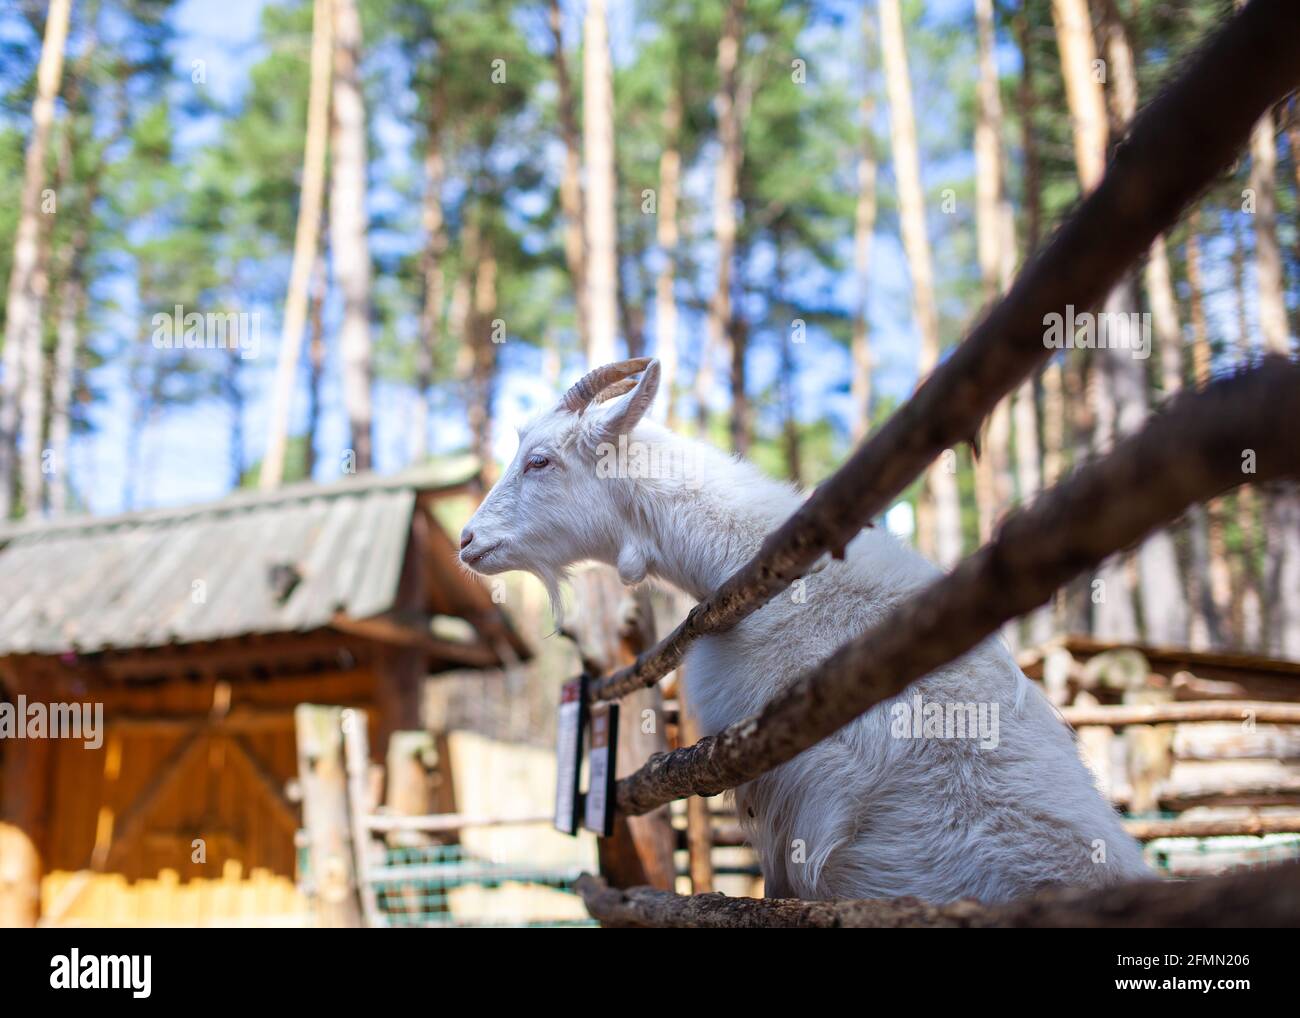 Une chèvre à cornes regarde à travers une clôture en bois. L'animal demande de la nourriture aux visiteurs. Coin rural. Banque D'Images